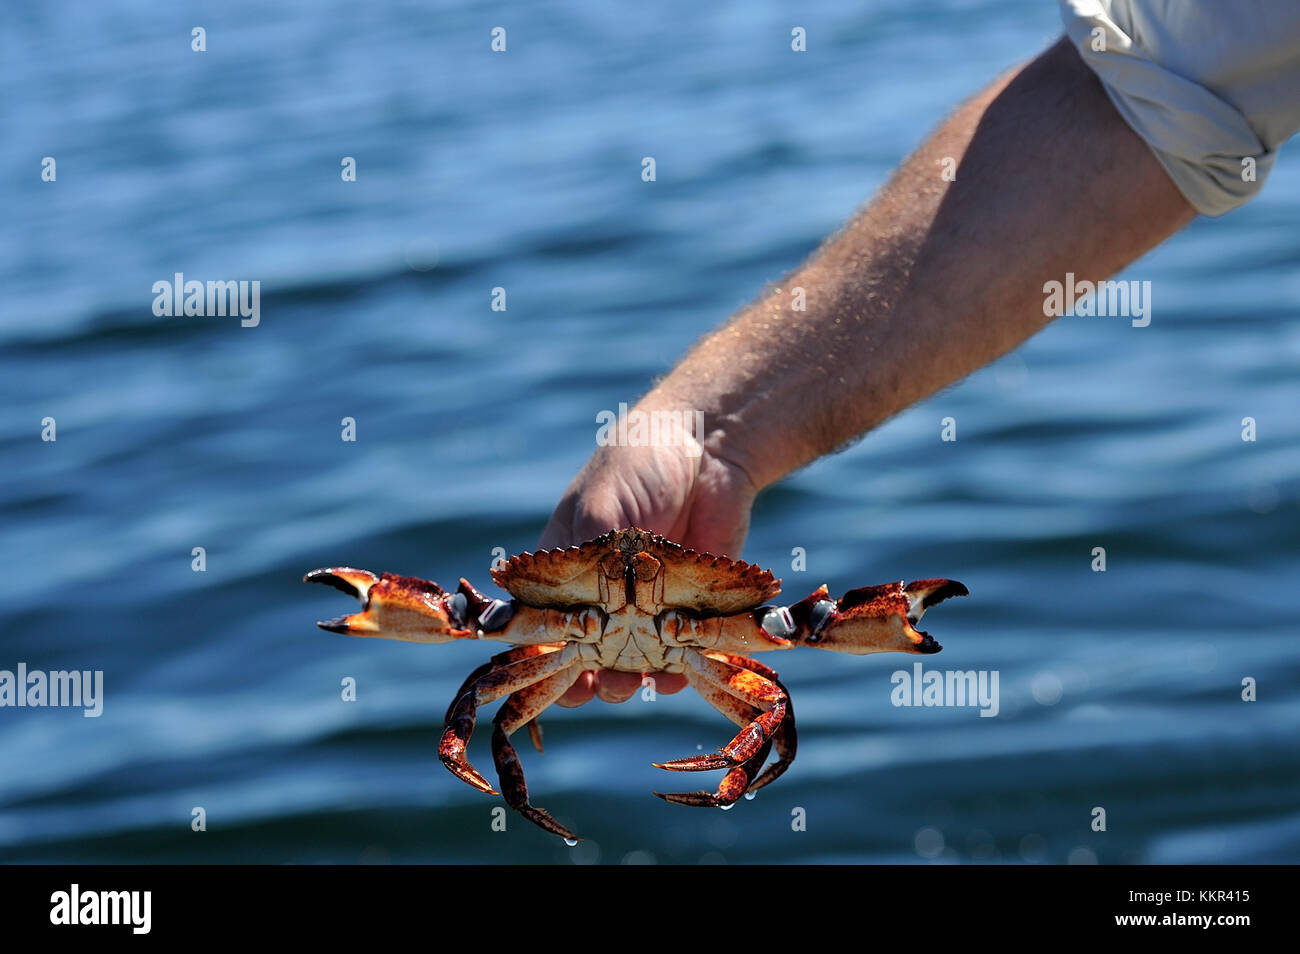 Un crabe rouge (Cancer productus) qui a lieu après avoir été pris dans un piège à crabe au large de la côte de l'île de Vancouver, Colombie-Britannique, Canada. Banque D'Images